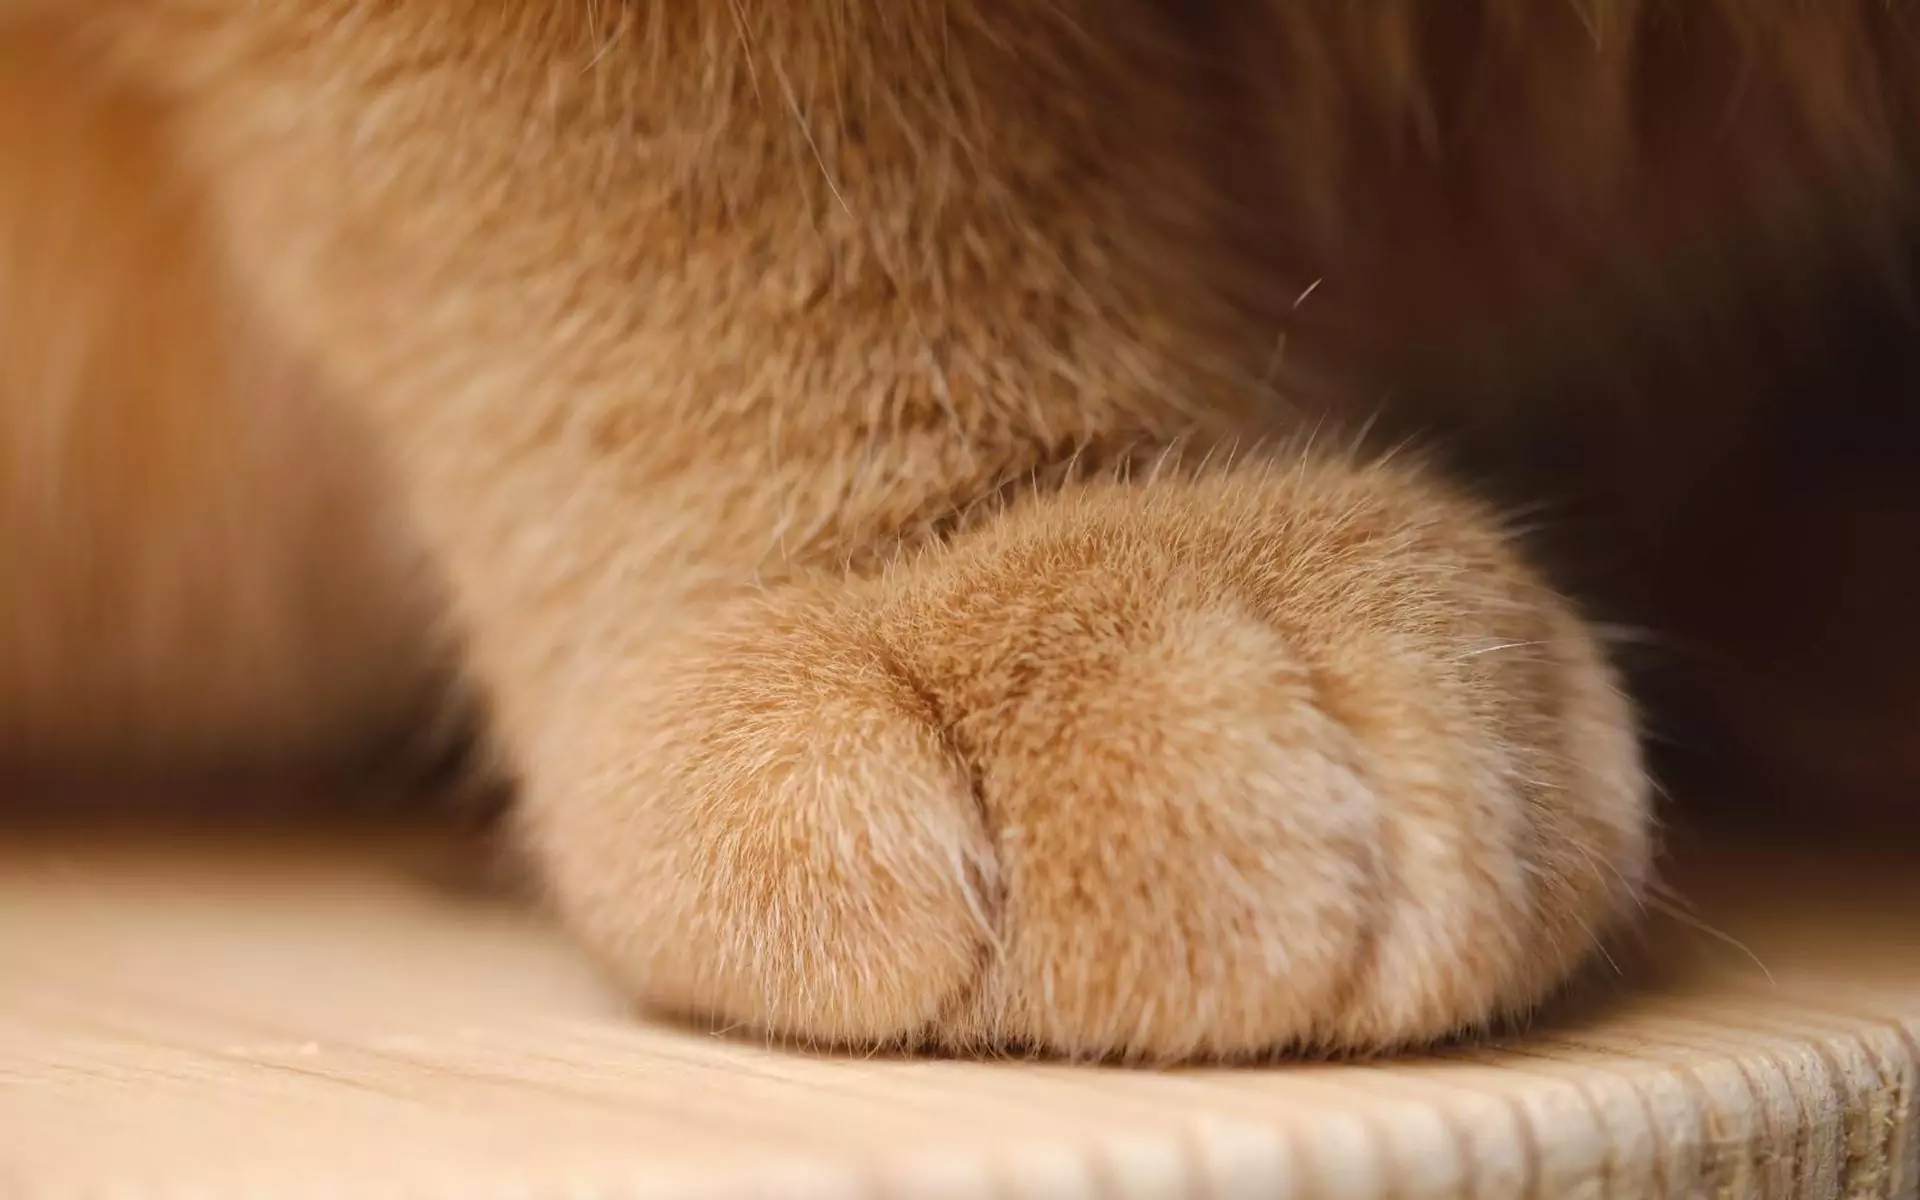 Quantos dedos dos pés tem um gato?